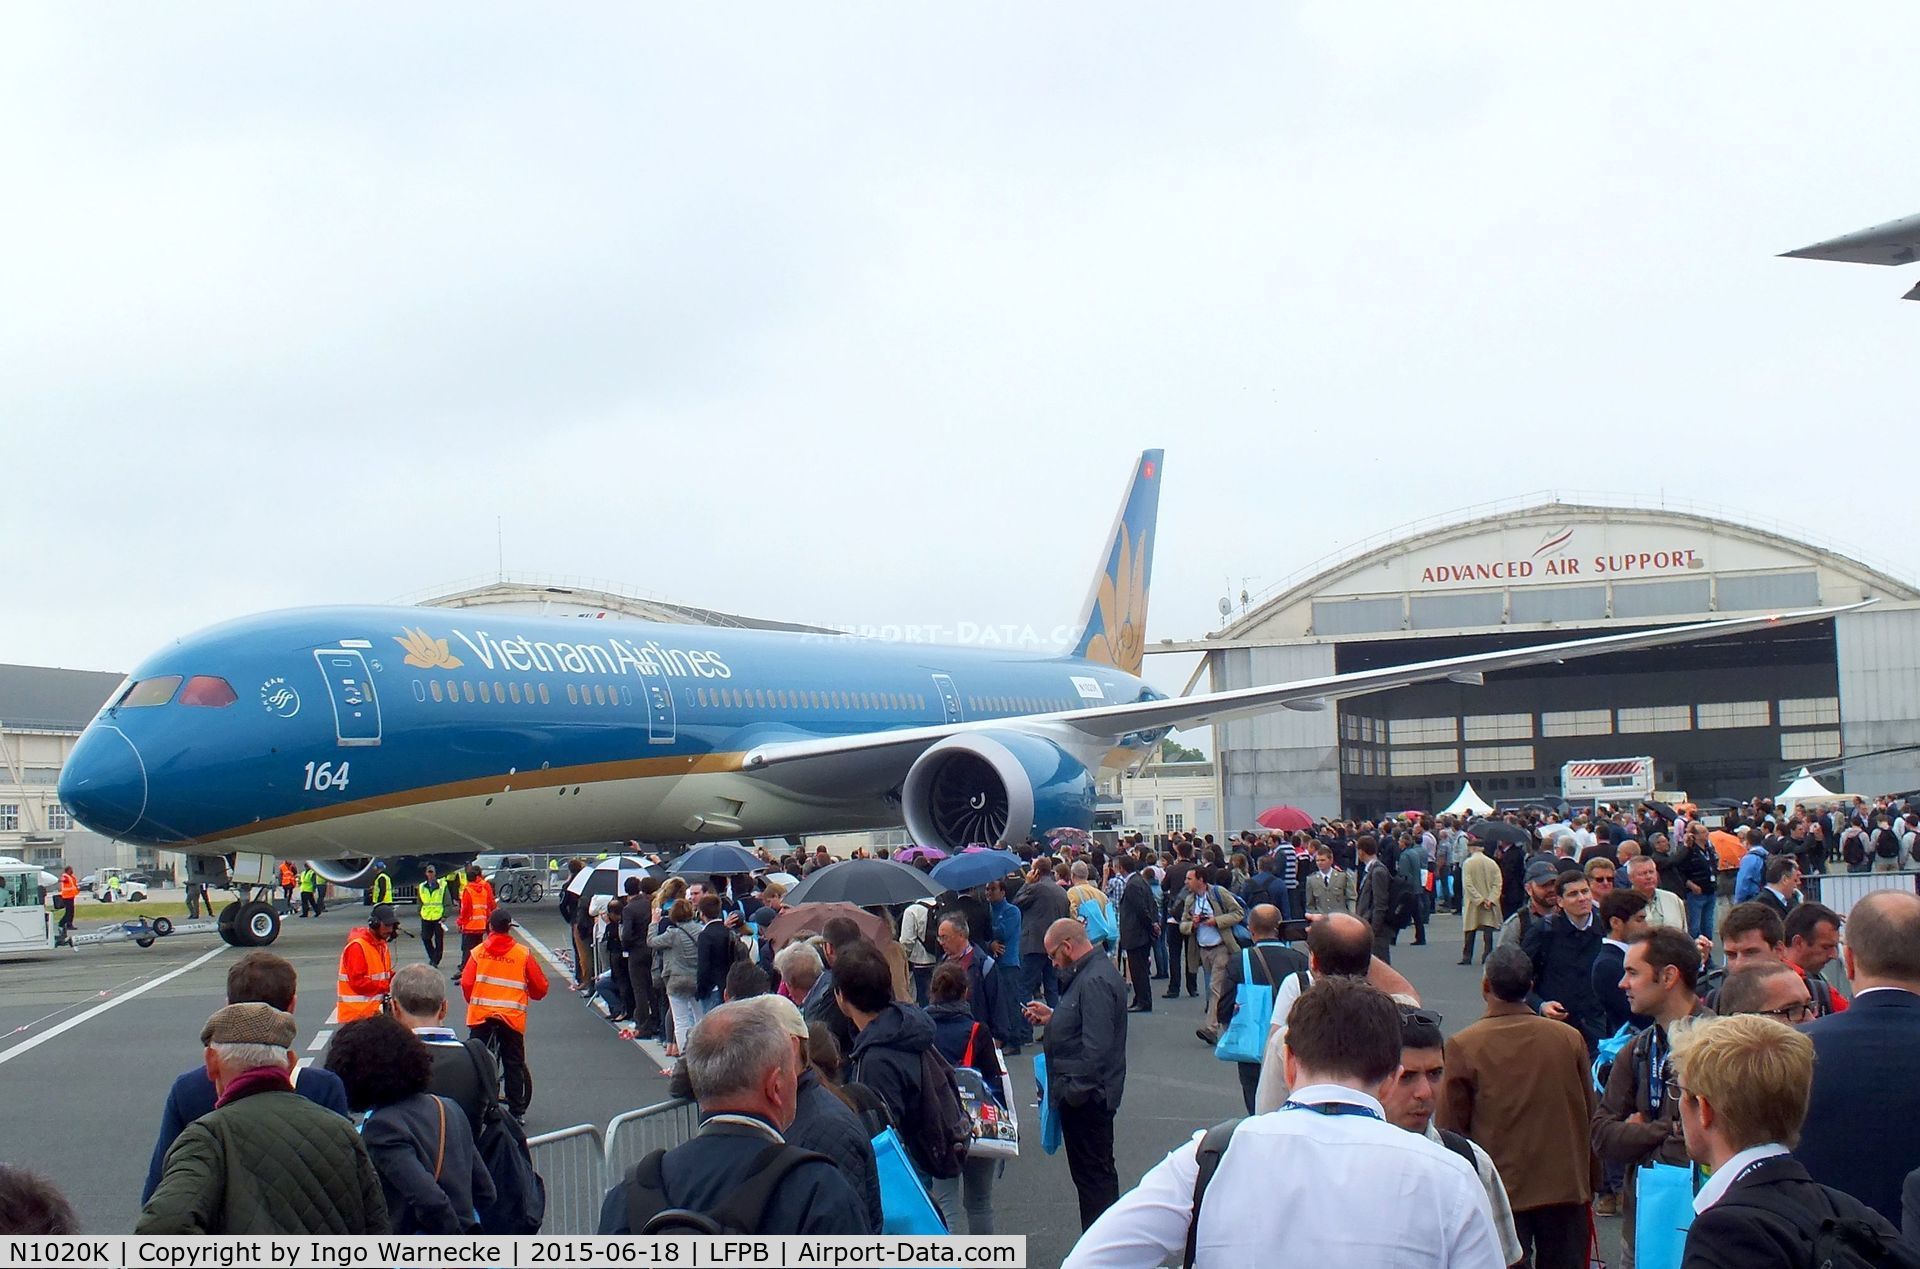 N1020K, 2015 Boeing 787-9 Dreamliner C/N 35151, Boeing 787-9 of Vietnam Airlines at the Aerosalon 2015, Paris